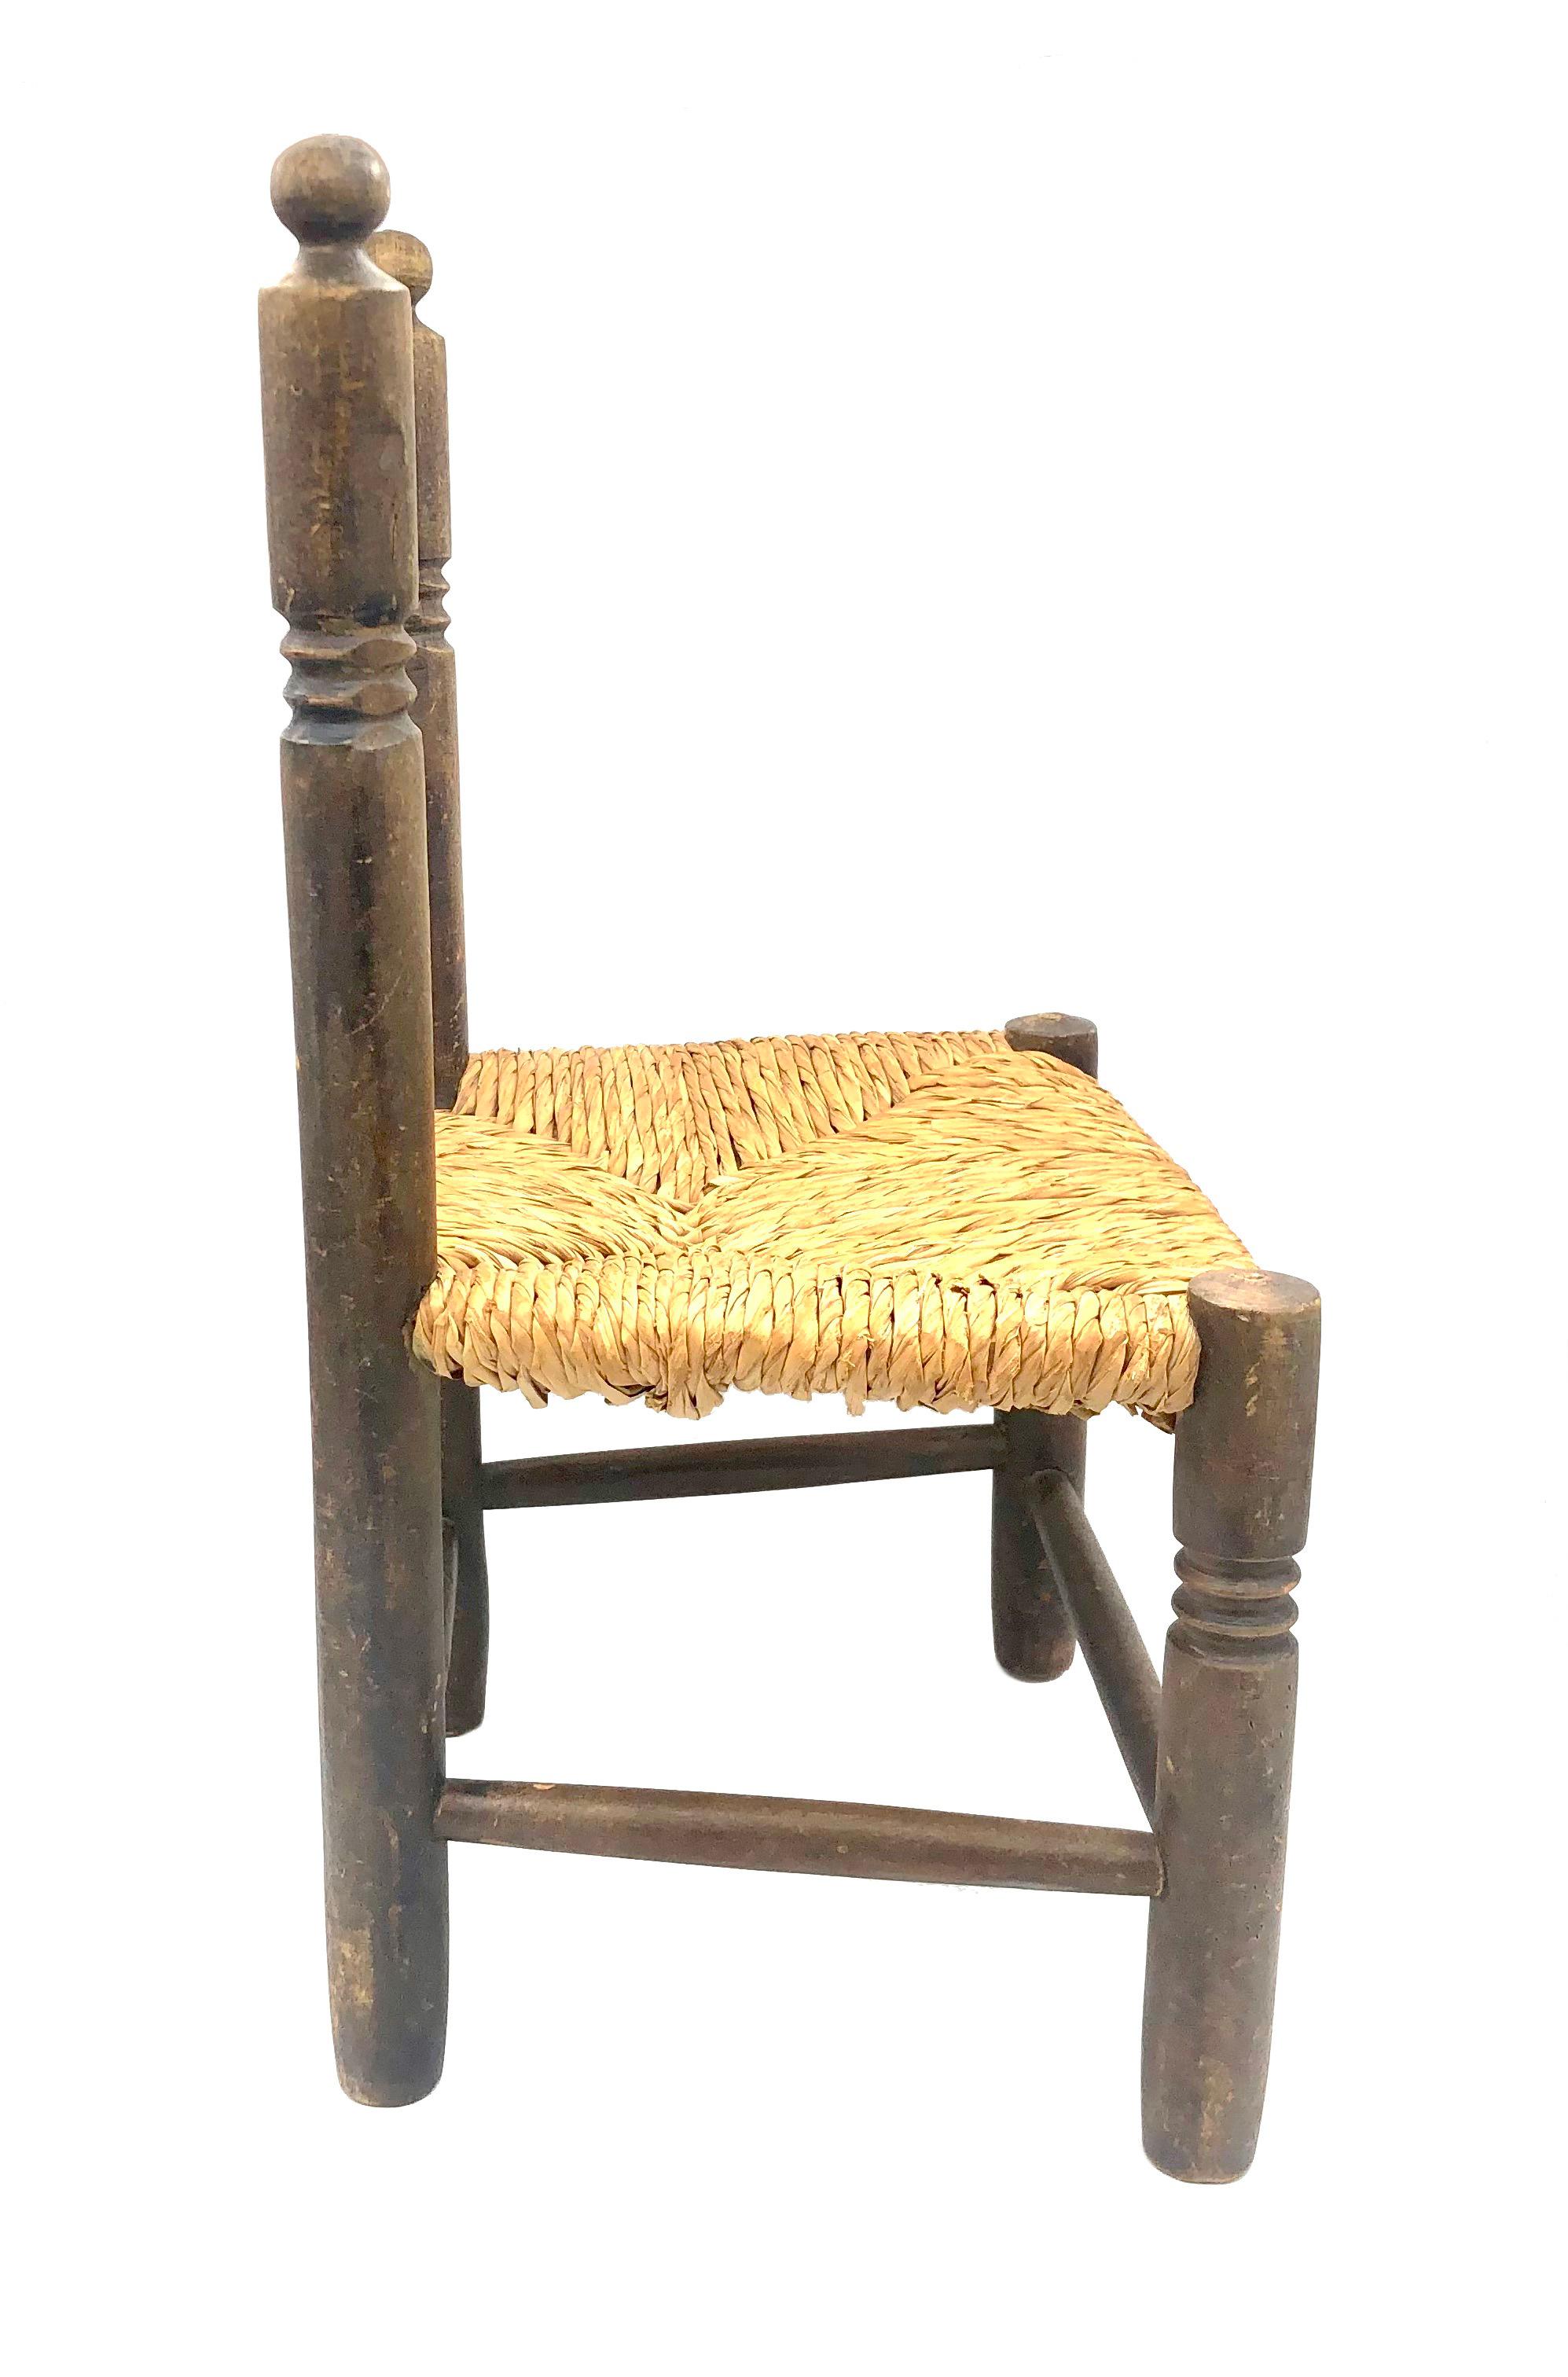 Cette solide chaise d'enfant a été fabriquée en chêne tourné dans le dernier quart du 19e siècle. L'assise en osier suit un motif géométrique et est en bon état. Les pieds et le dos du cair sont décorés de motifs géométriques. 
découper des cercles.